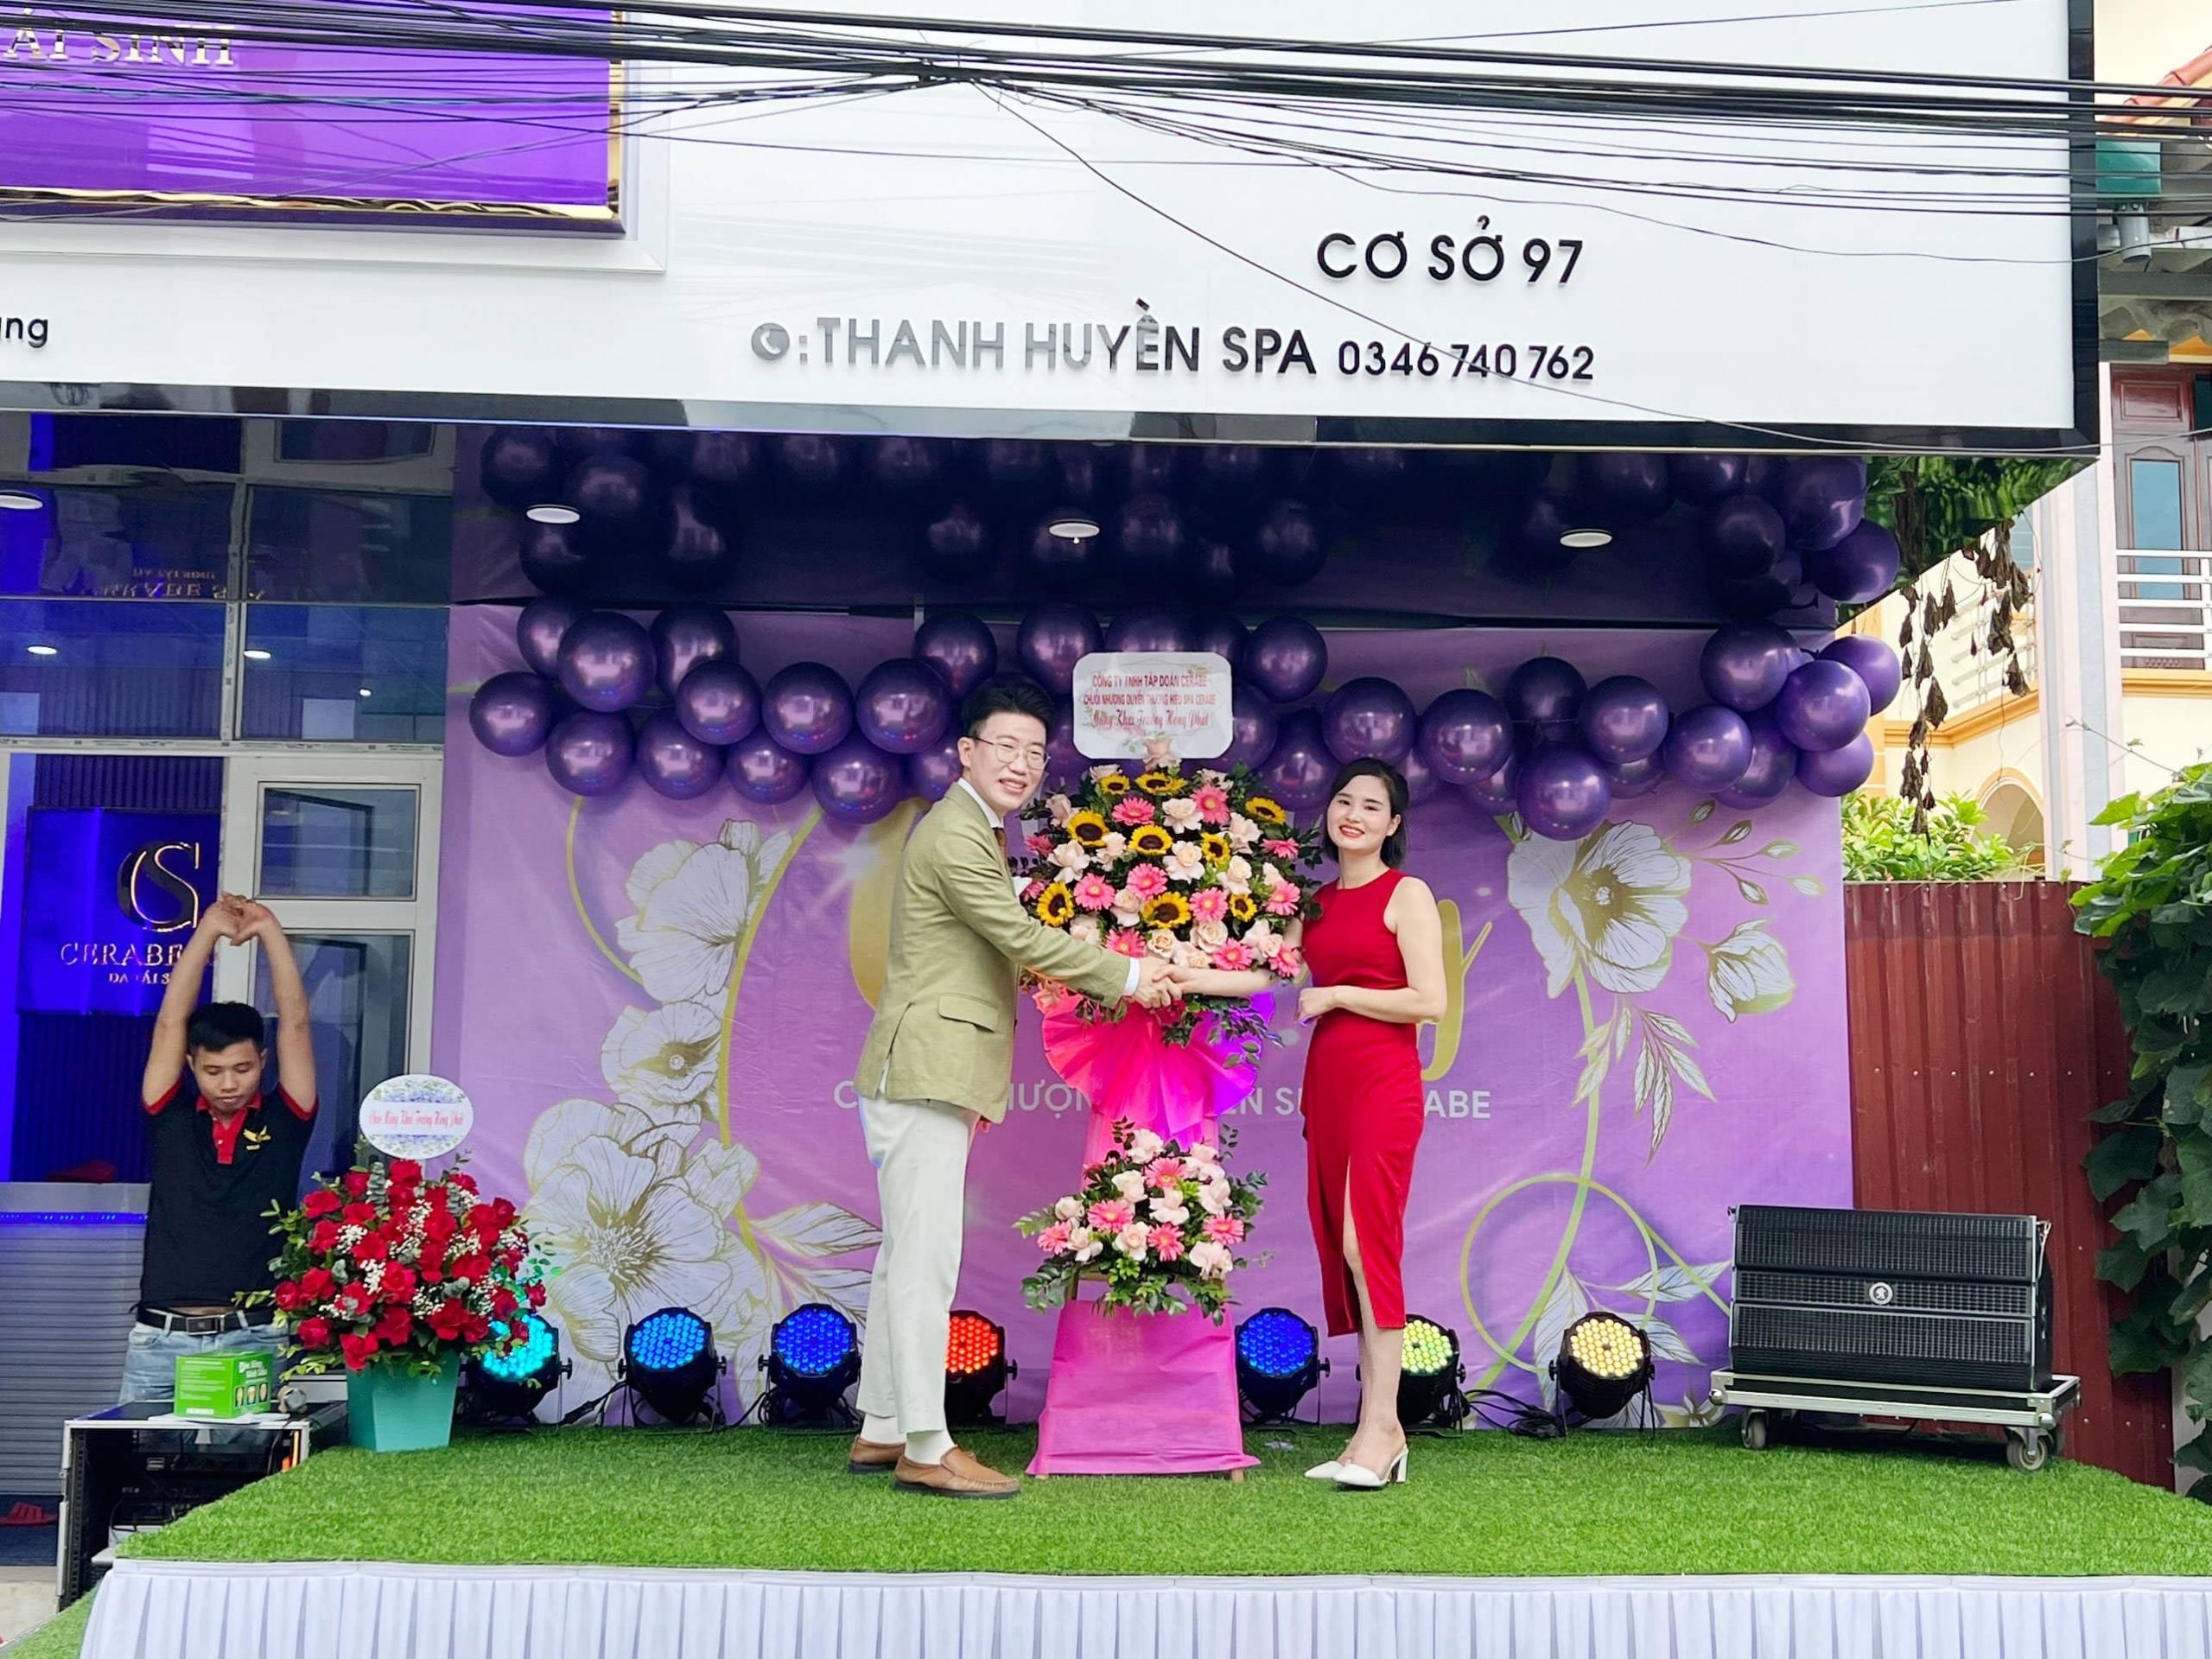 Giám đốc Shin Jong Ho gửi tặng tân giám đốc lãng hoa chúc khai trương hồng phát